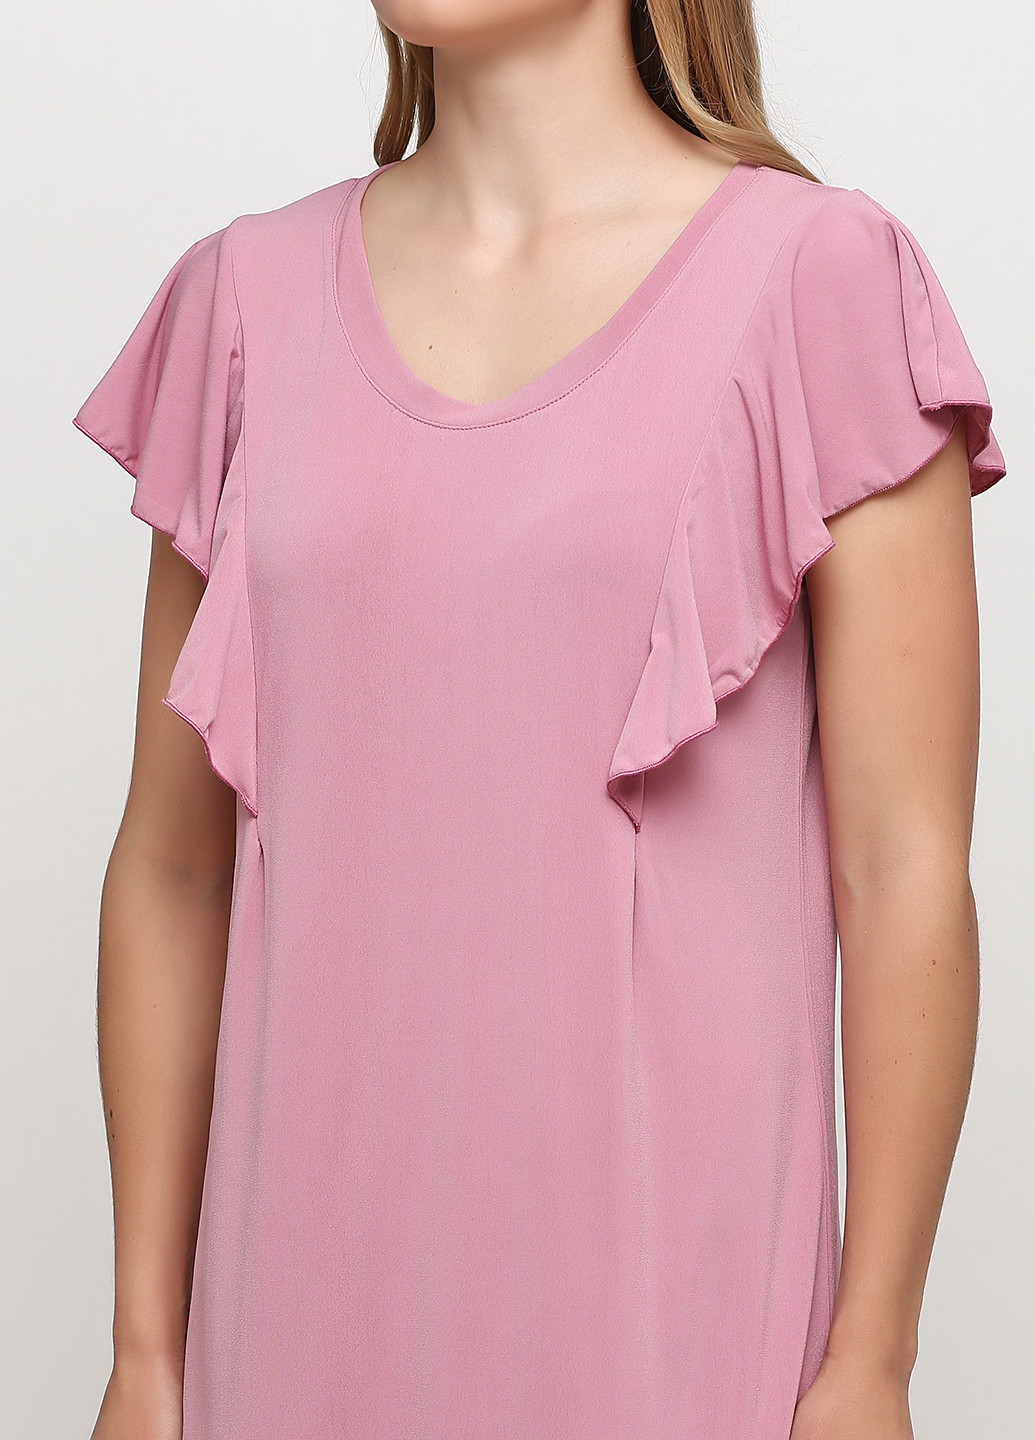 Розовое домашнее платье платье-футболка Трикомир однотонное